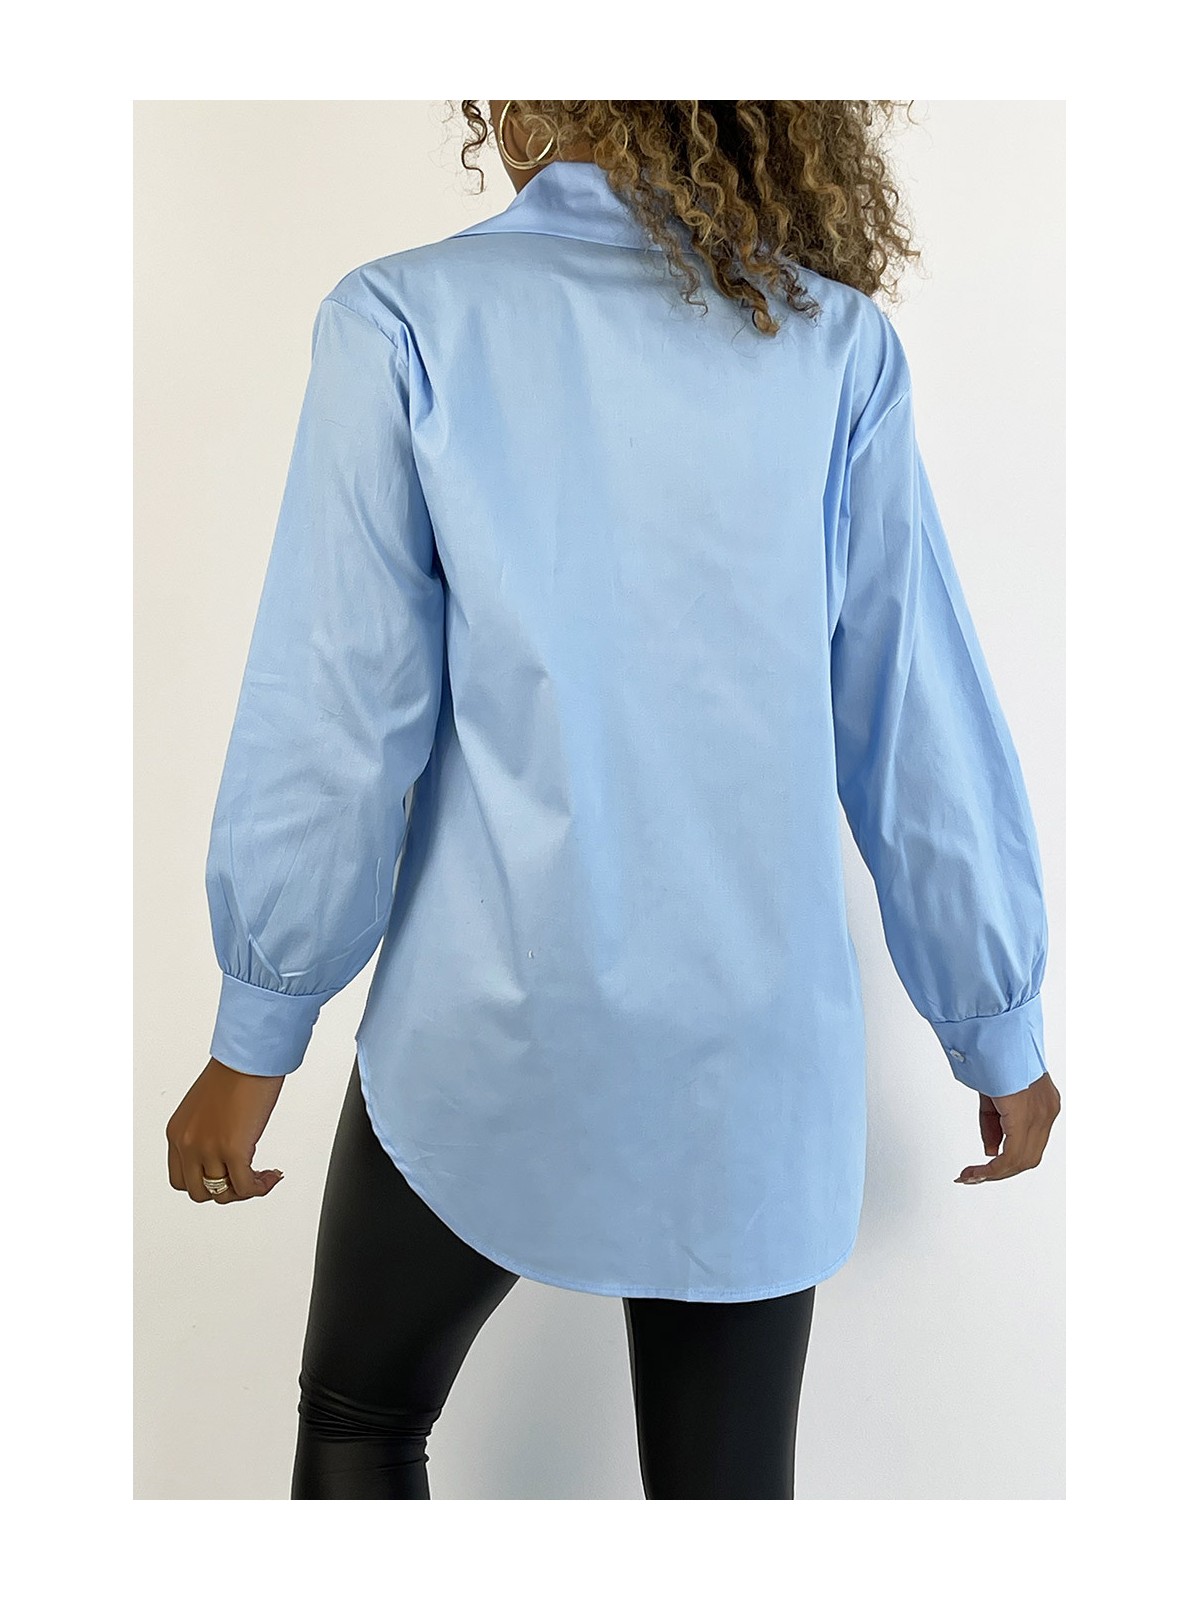 Chemise turquoise en coton très tendance et agréable à porter - 4